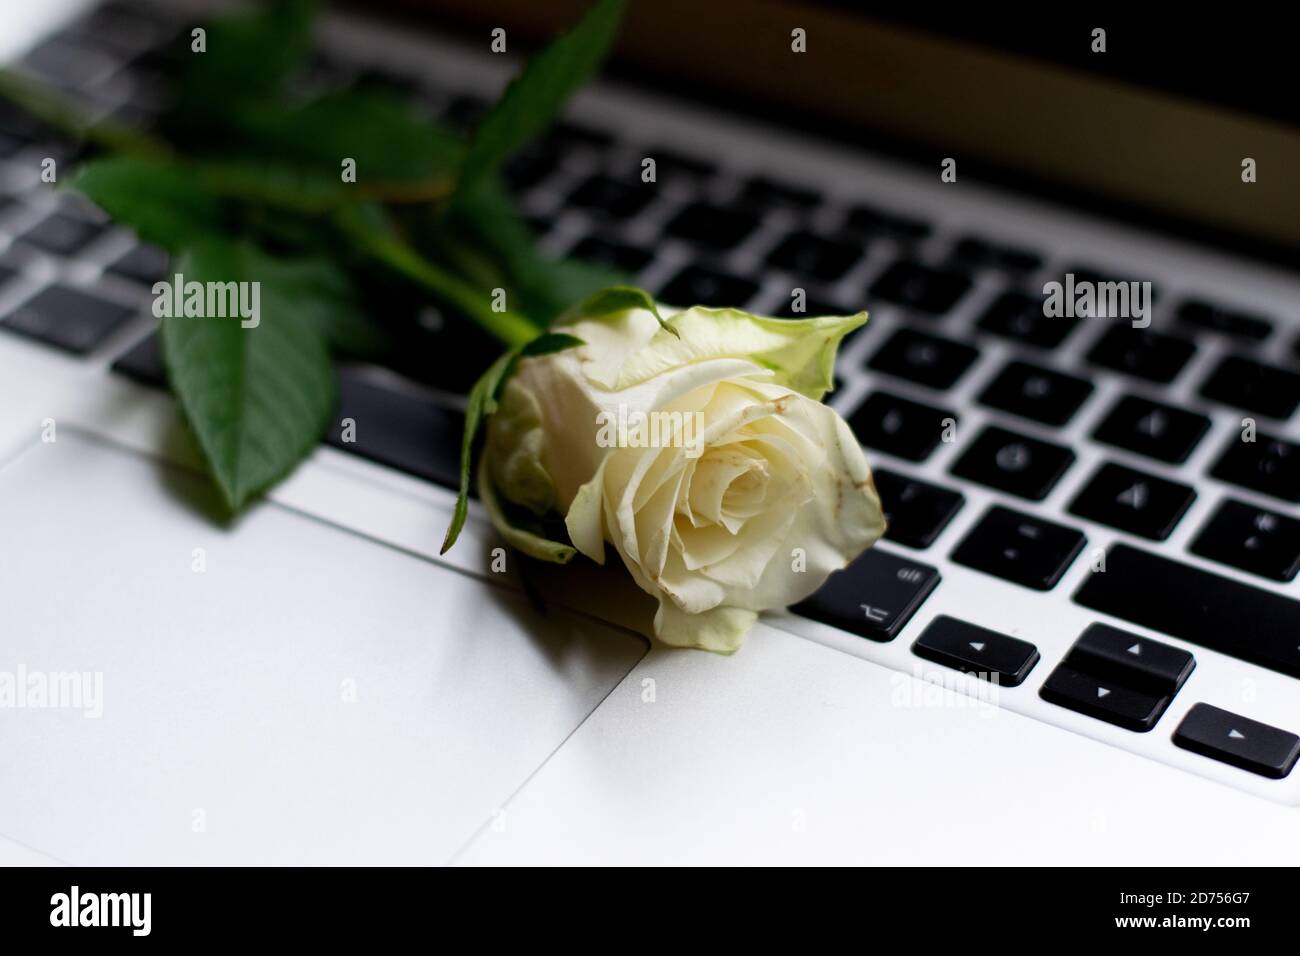 Rosa gialla sulla tastiera del notebook. Concetto di datazione in linea, romanticismo di ufficio o rapporto di lunga distanza Foto Stock